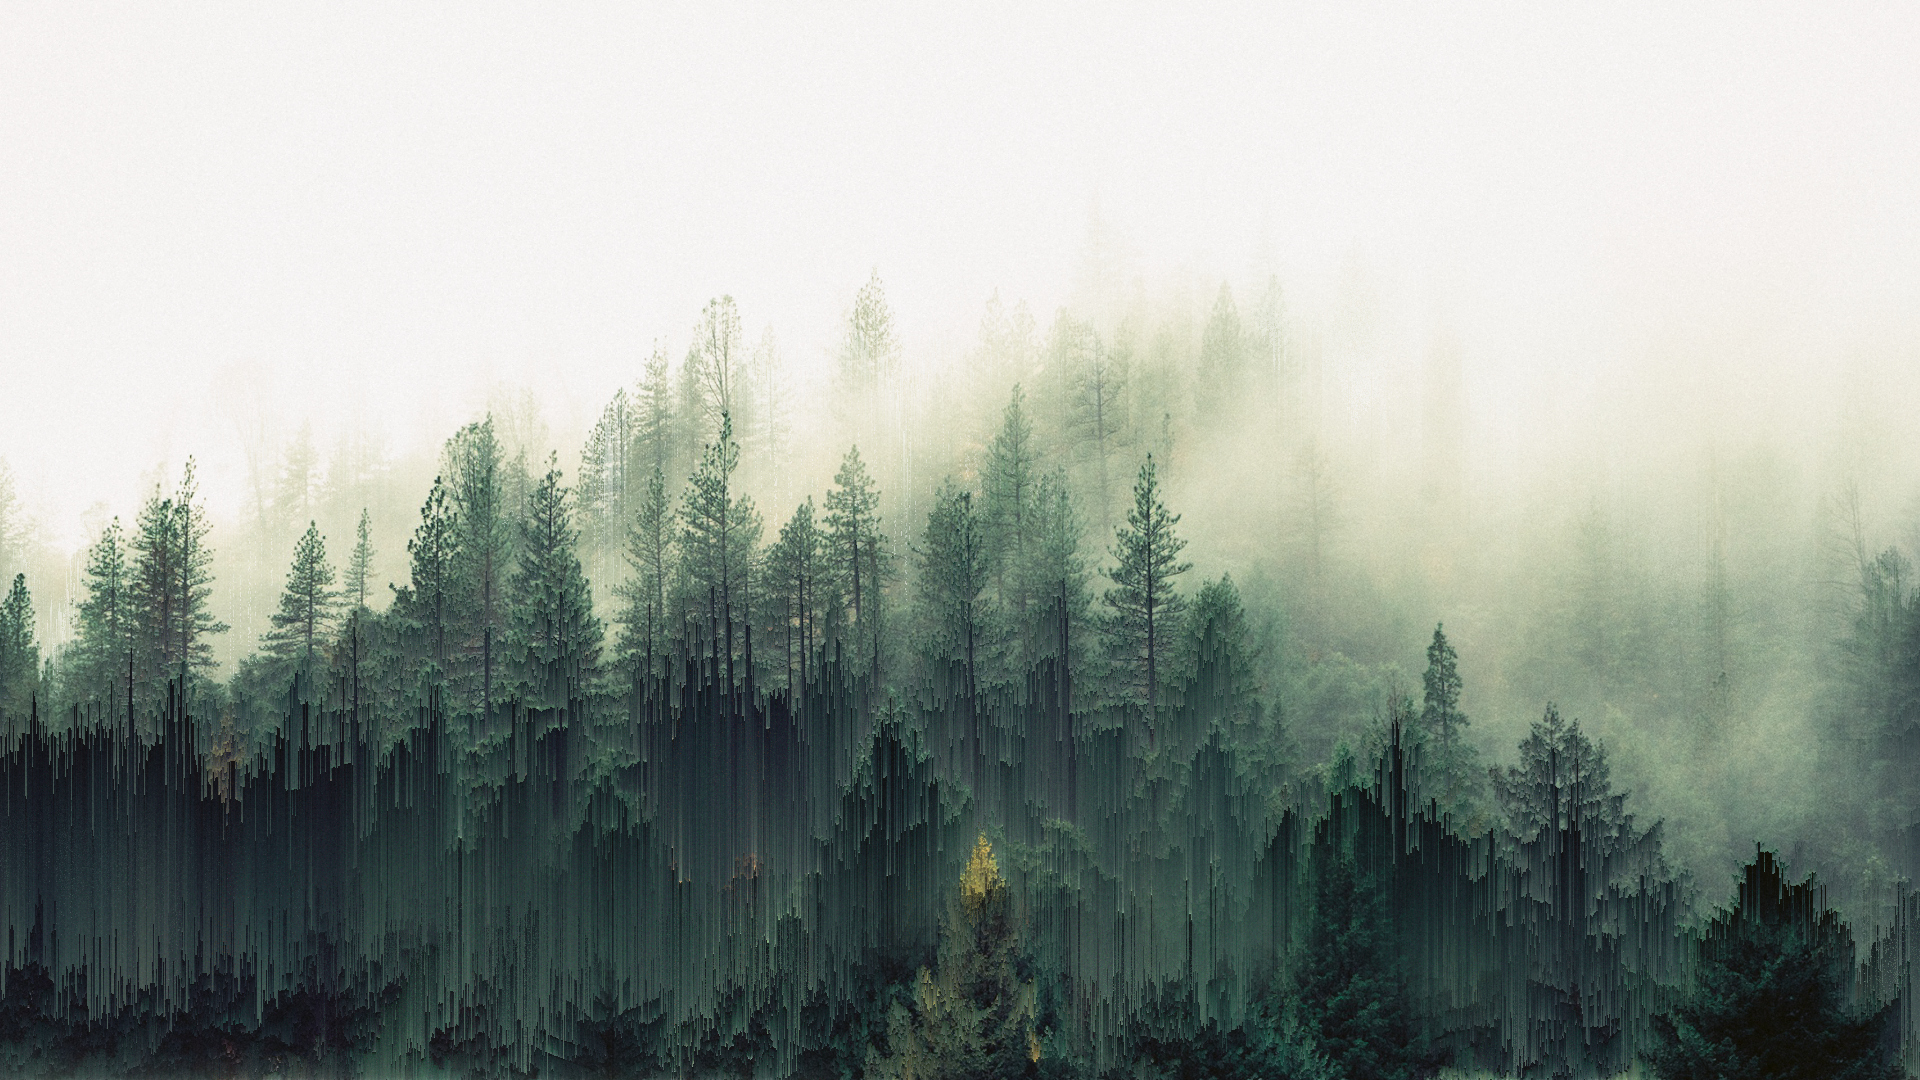 General 1920x1080 forest trees mist pixel sorting glitch art green digital art